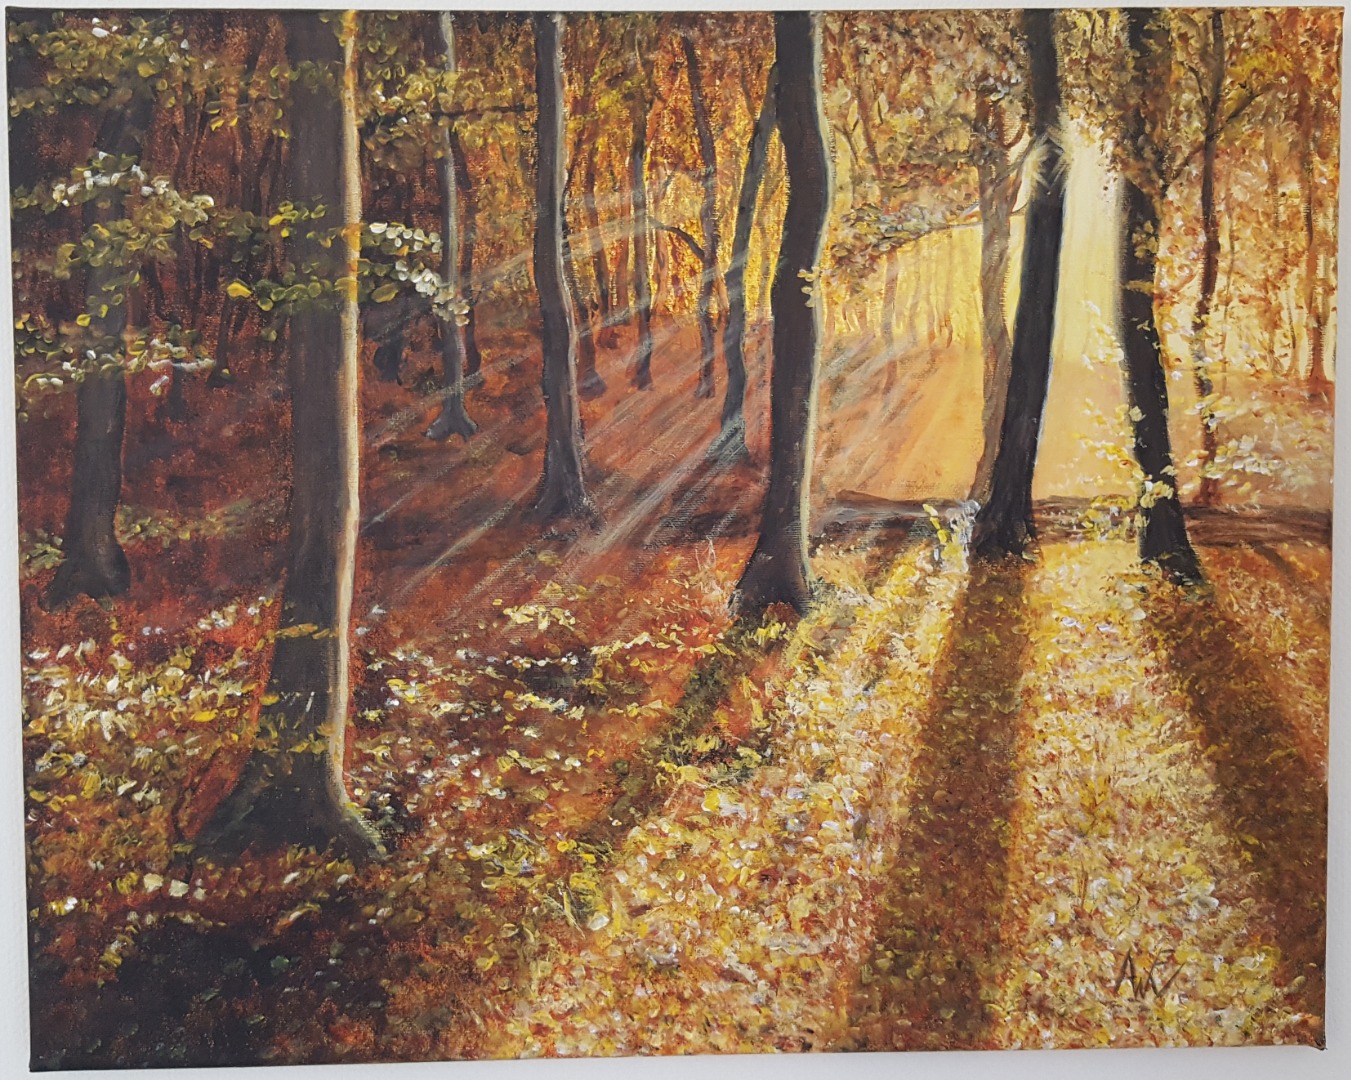 zonnestralen door bomen schilderij acrylverf op canvas